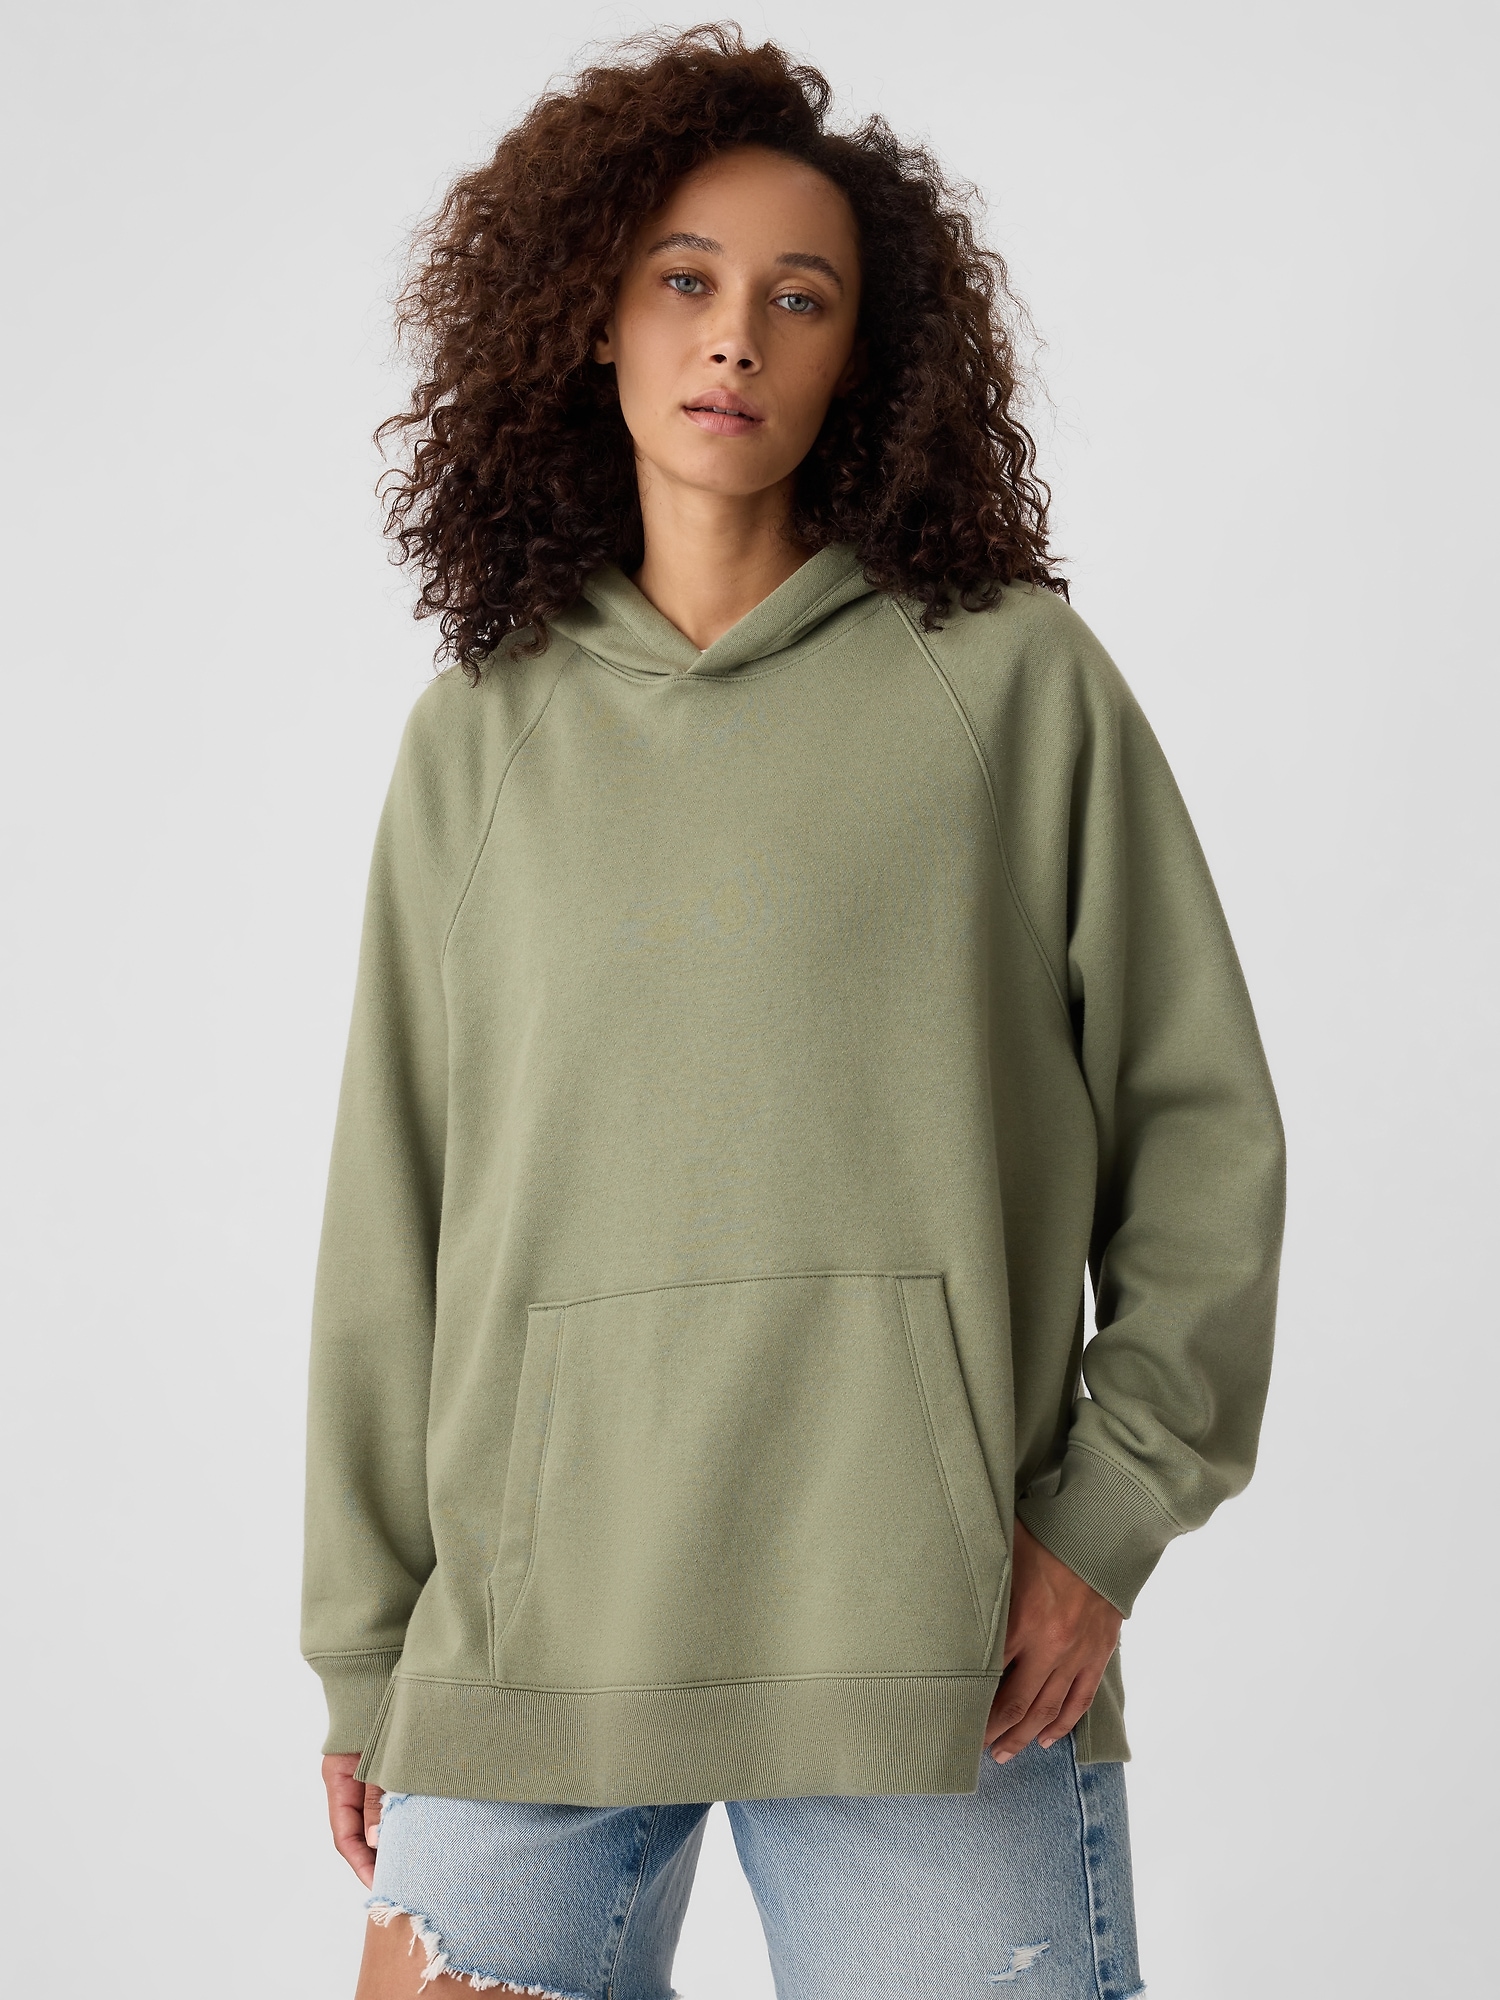 Tunic Sweatshirt For Women | Gap Factory